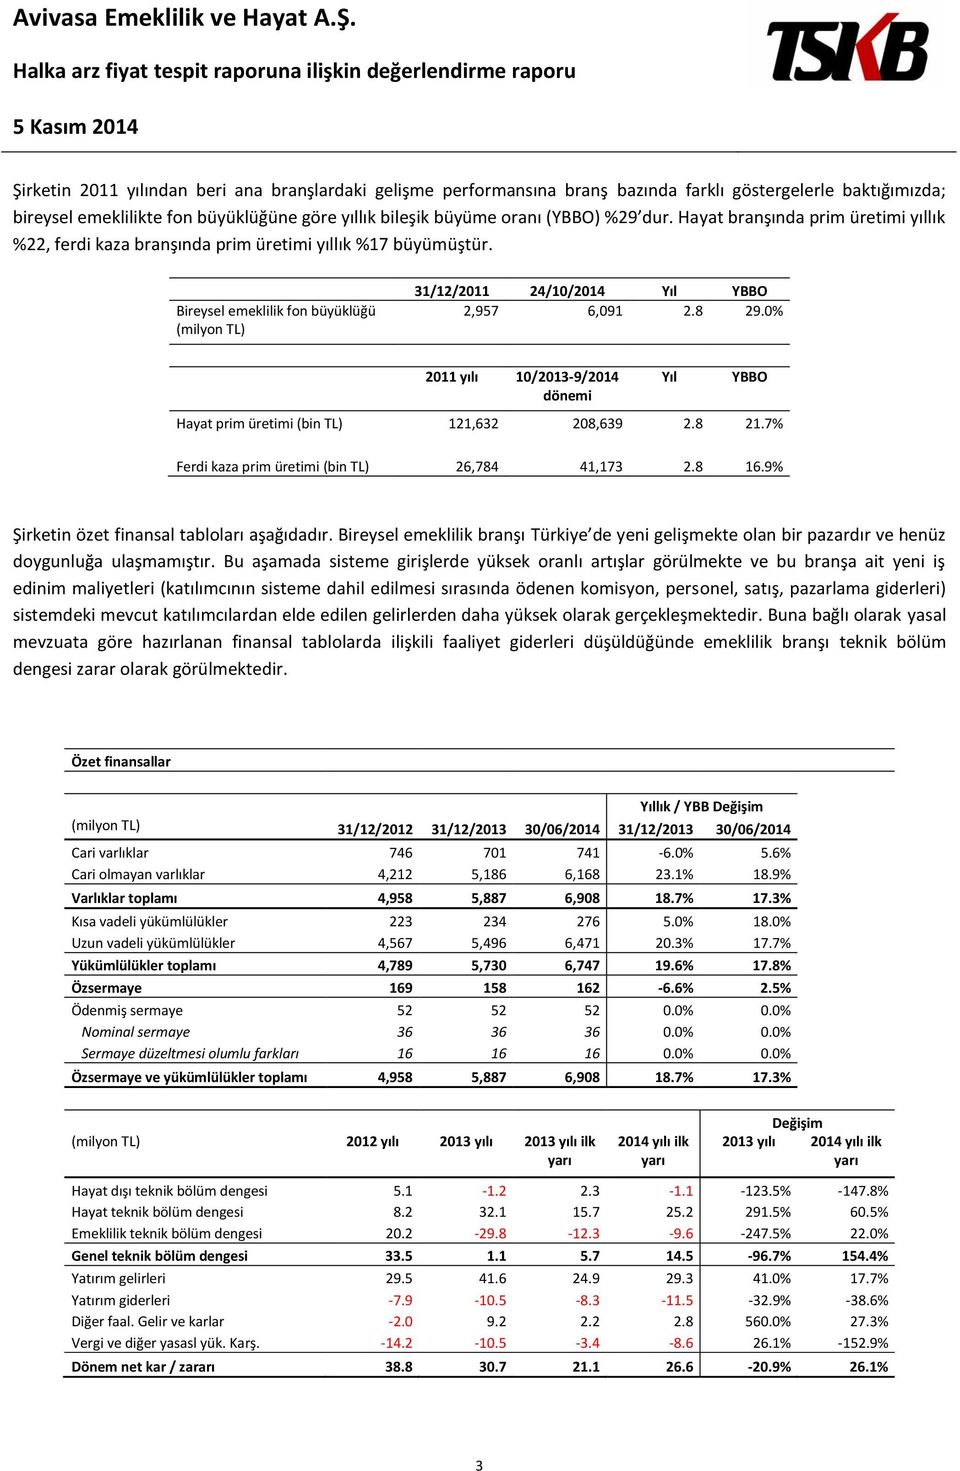 0% 2011 yılı 10/2013-9/2014 dönemi Yıl YBBO Hayat prim üretimi (bin TL) 121,632 208,639 2.8 21.7% Ferdi kaza prim üretimi (bin TL) 26,784 41,173 2.8 16.9% Şirketin özet finansal tabloları aşağıdadır.